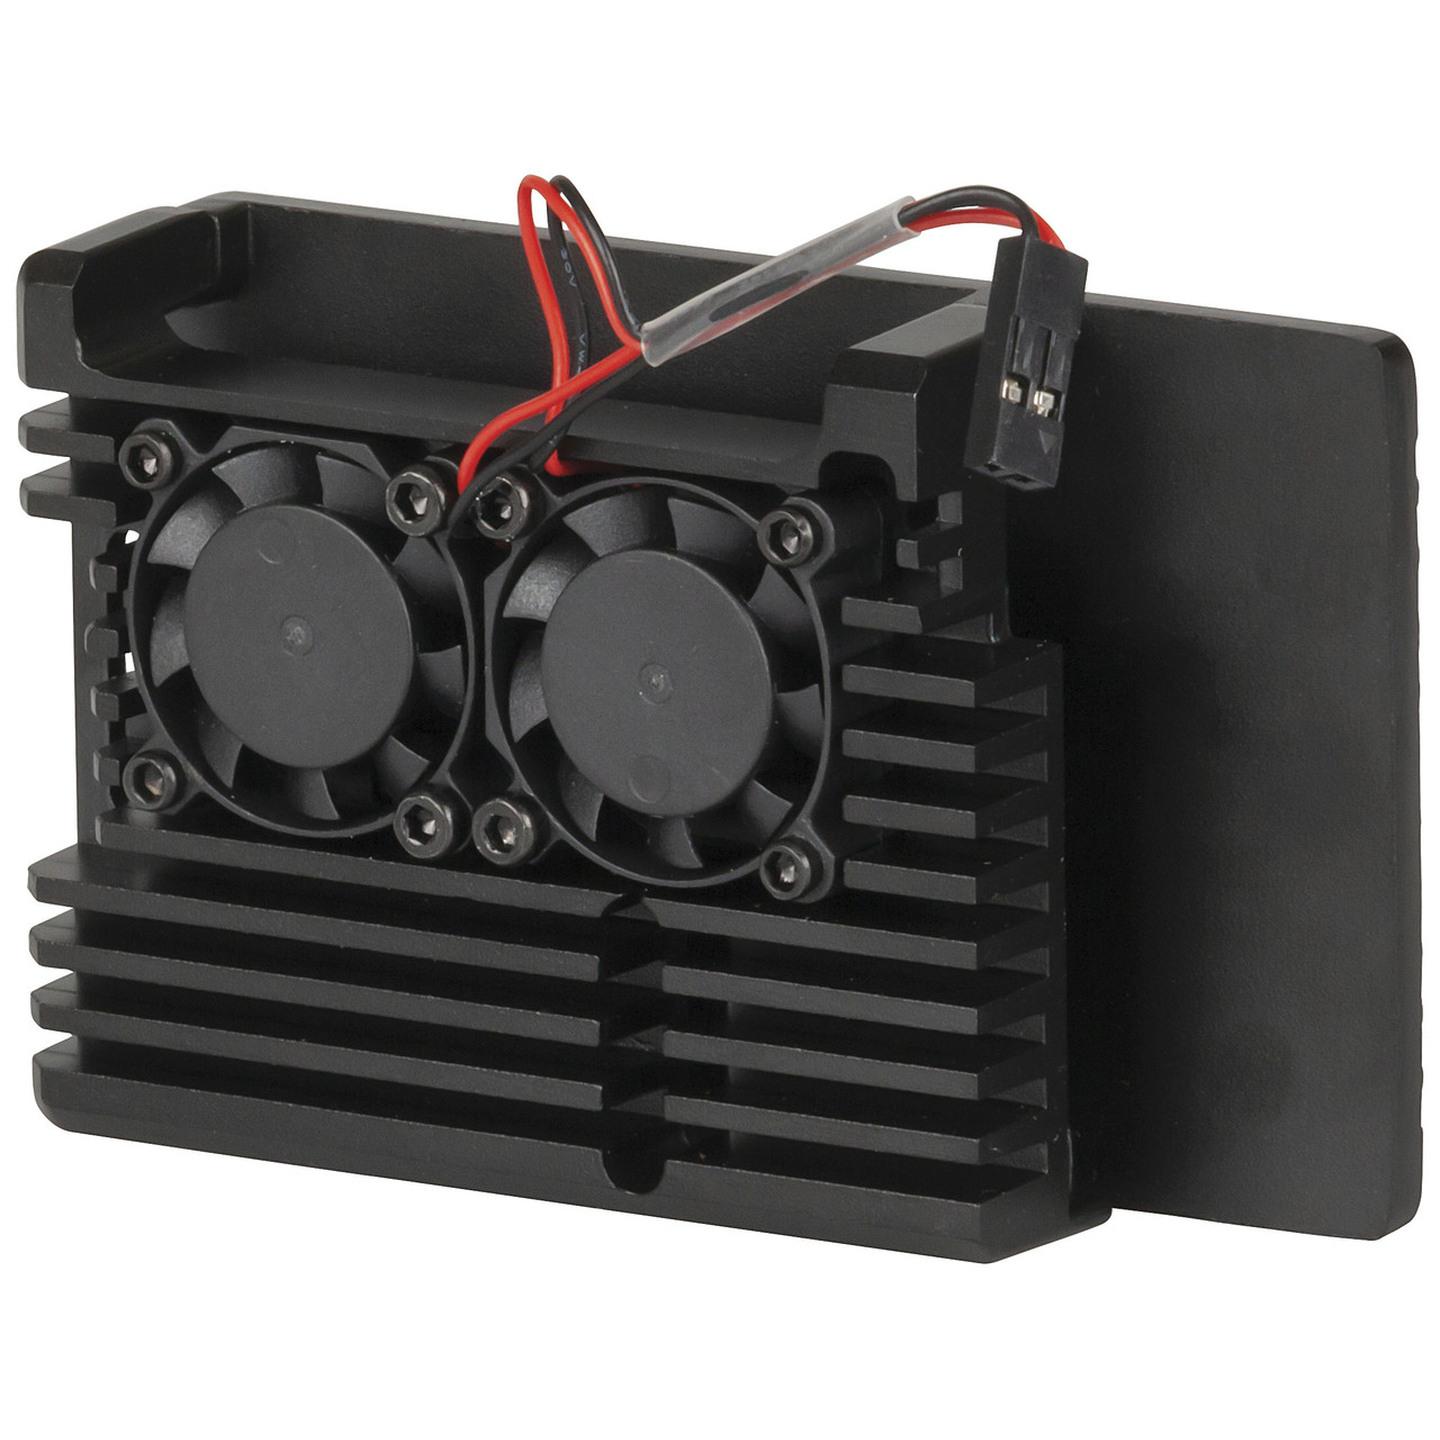 Heatsink Case with Dual Fan for RPi4